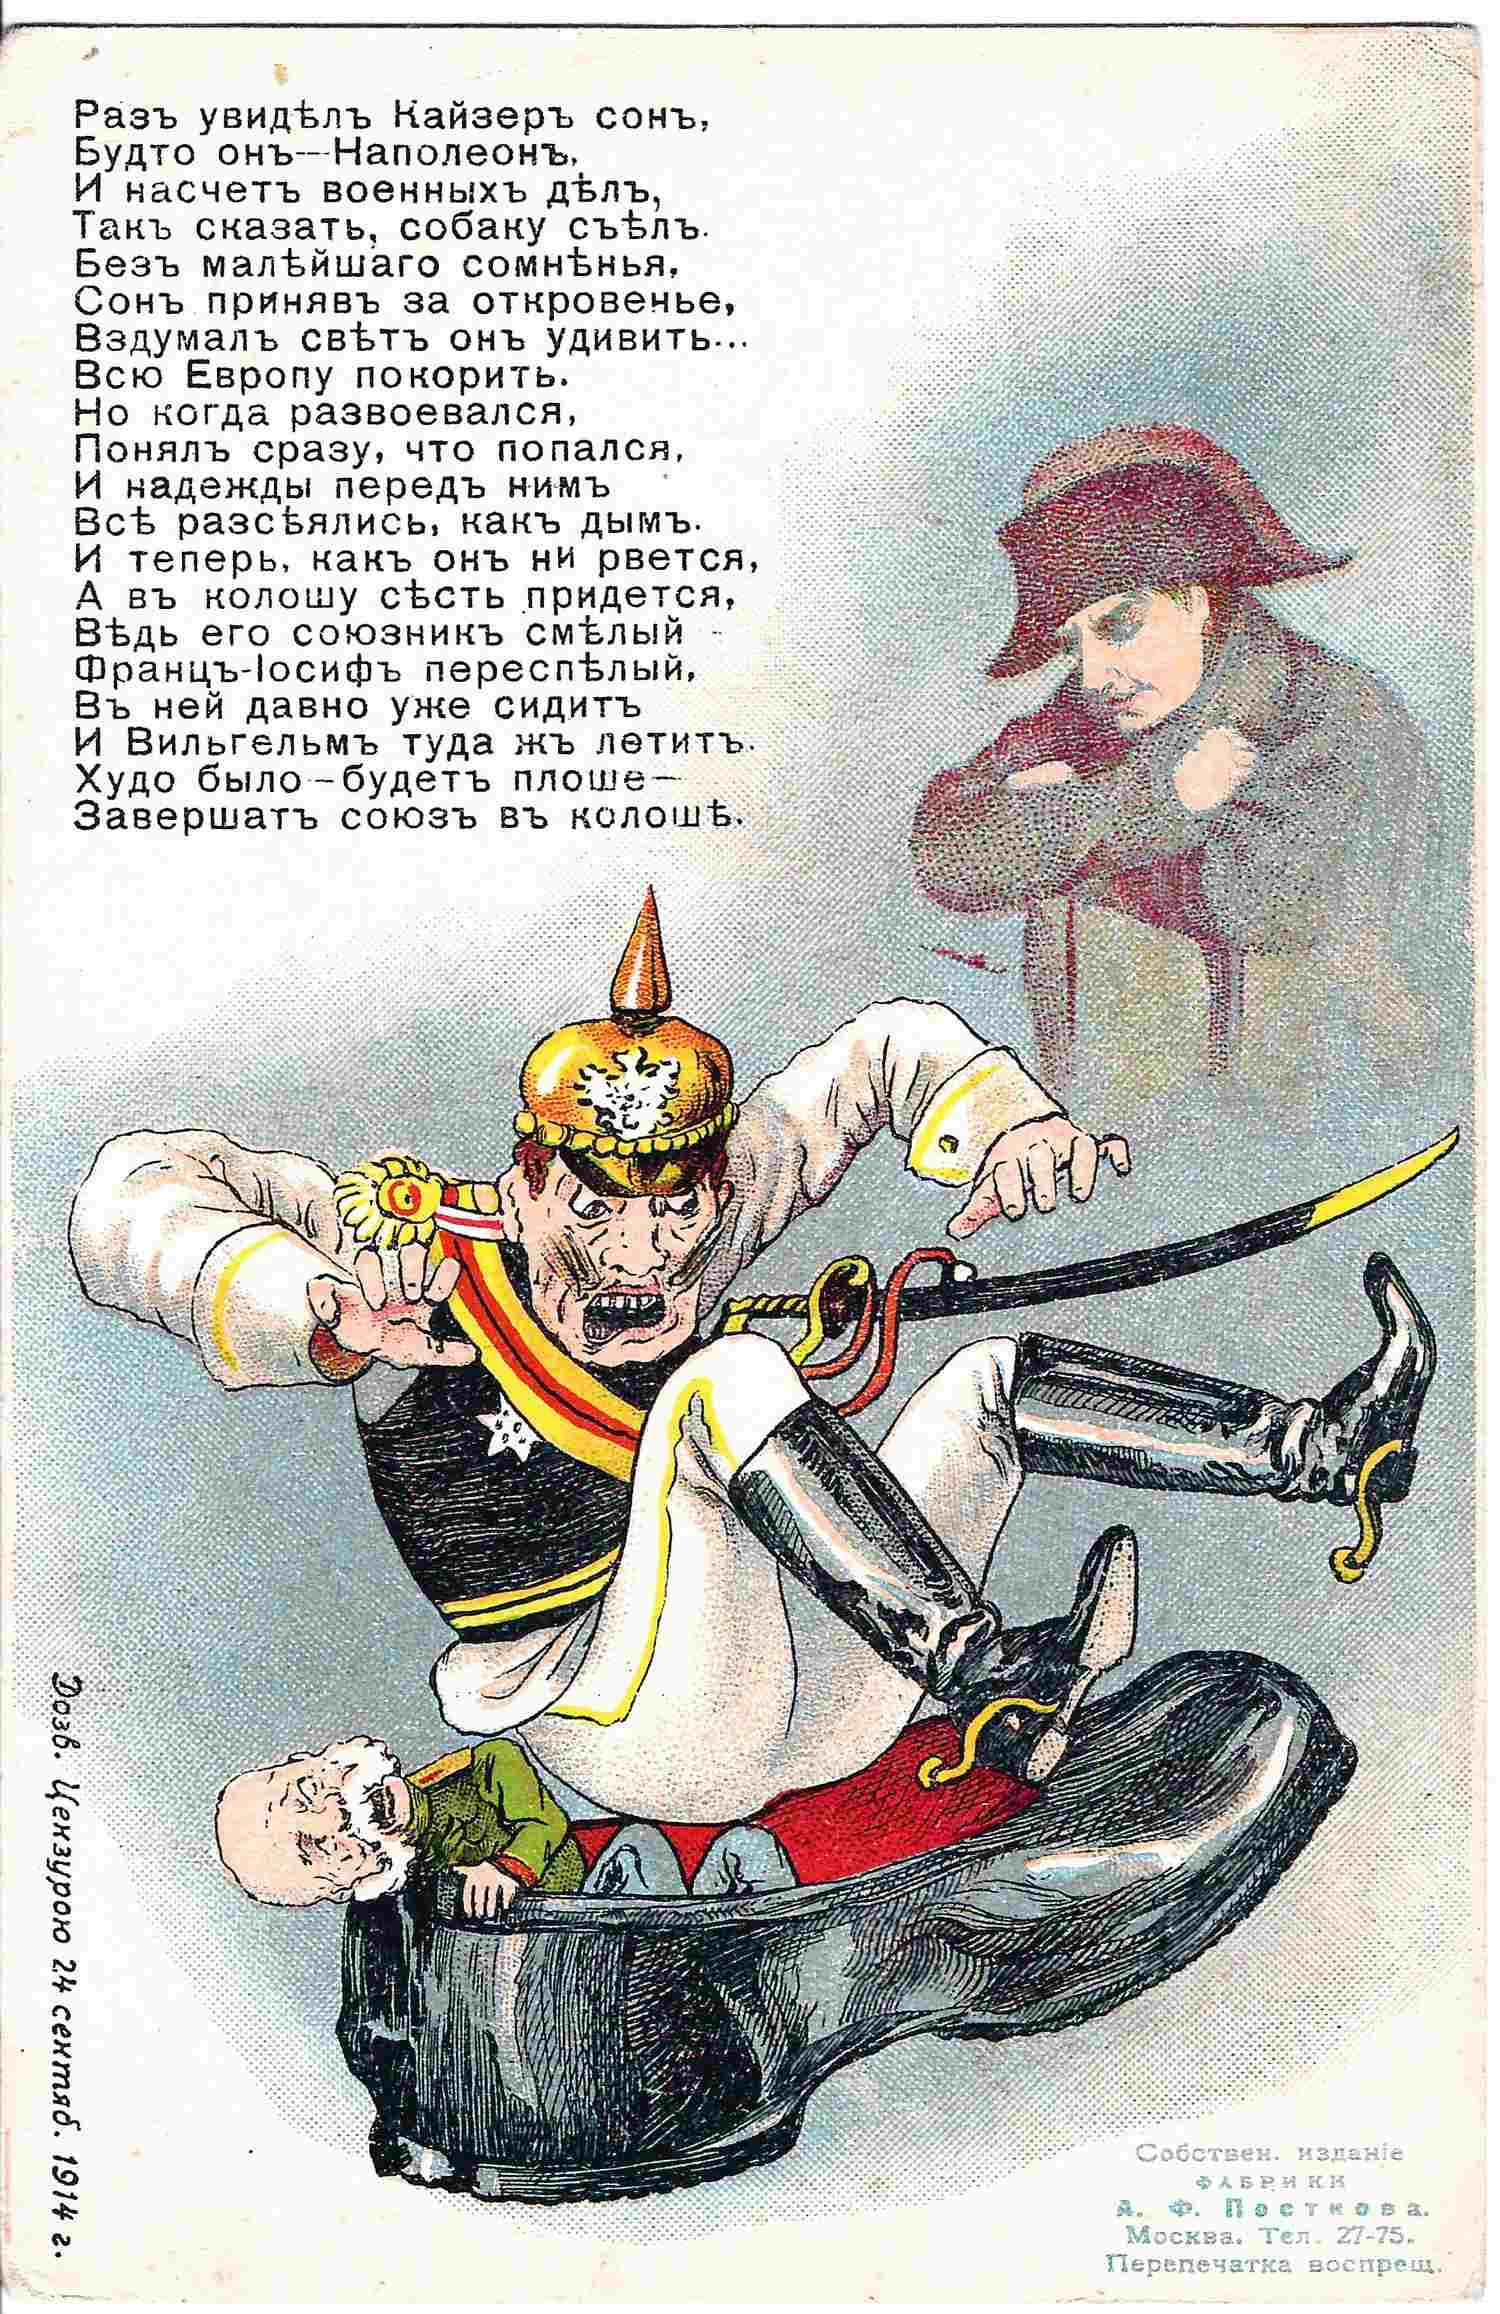 Открытка «Раз увидел Кайзер сон...» Издание А.Ф. Постнова, 1914.